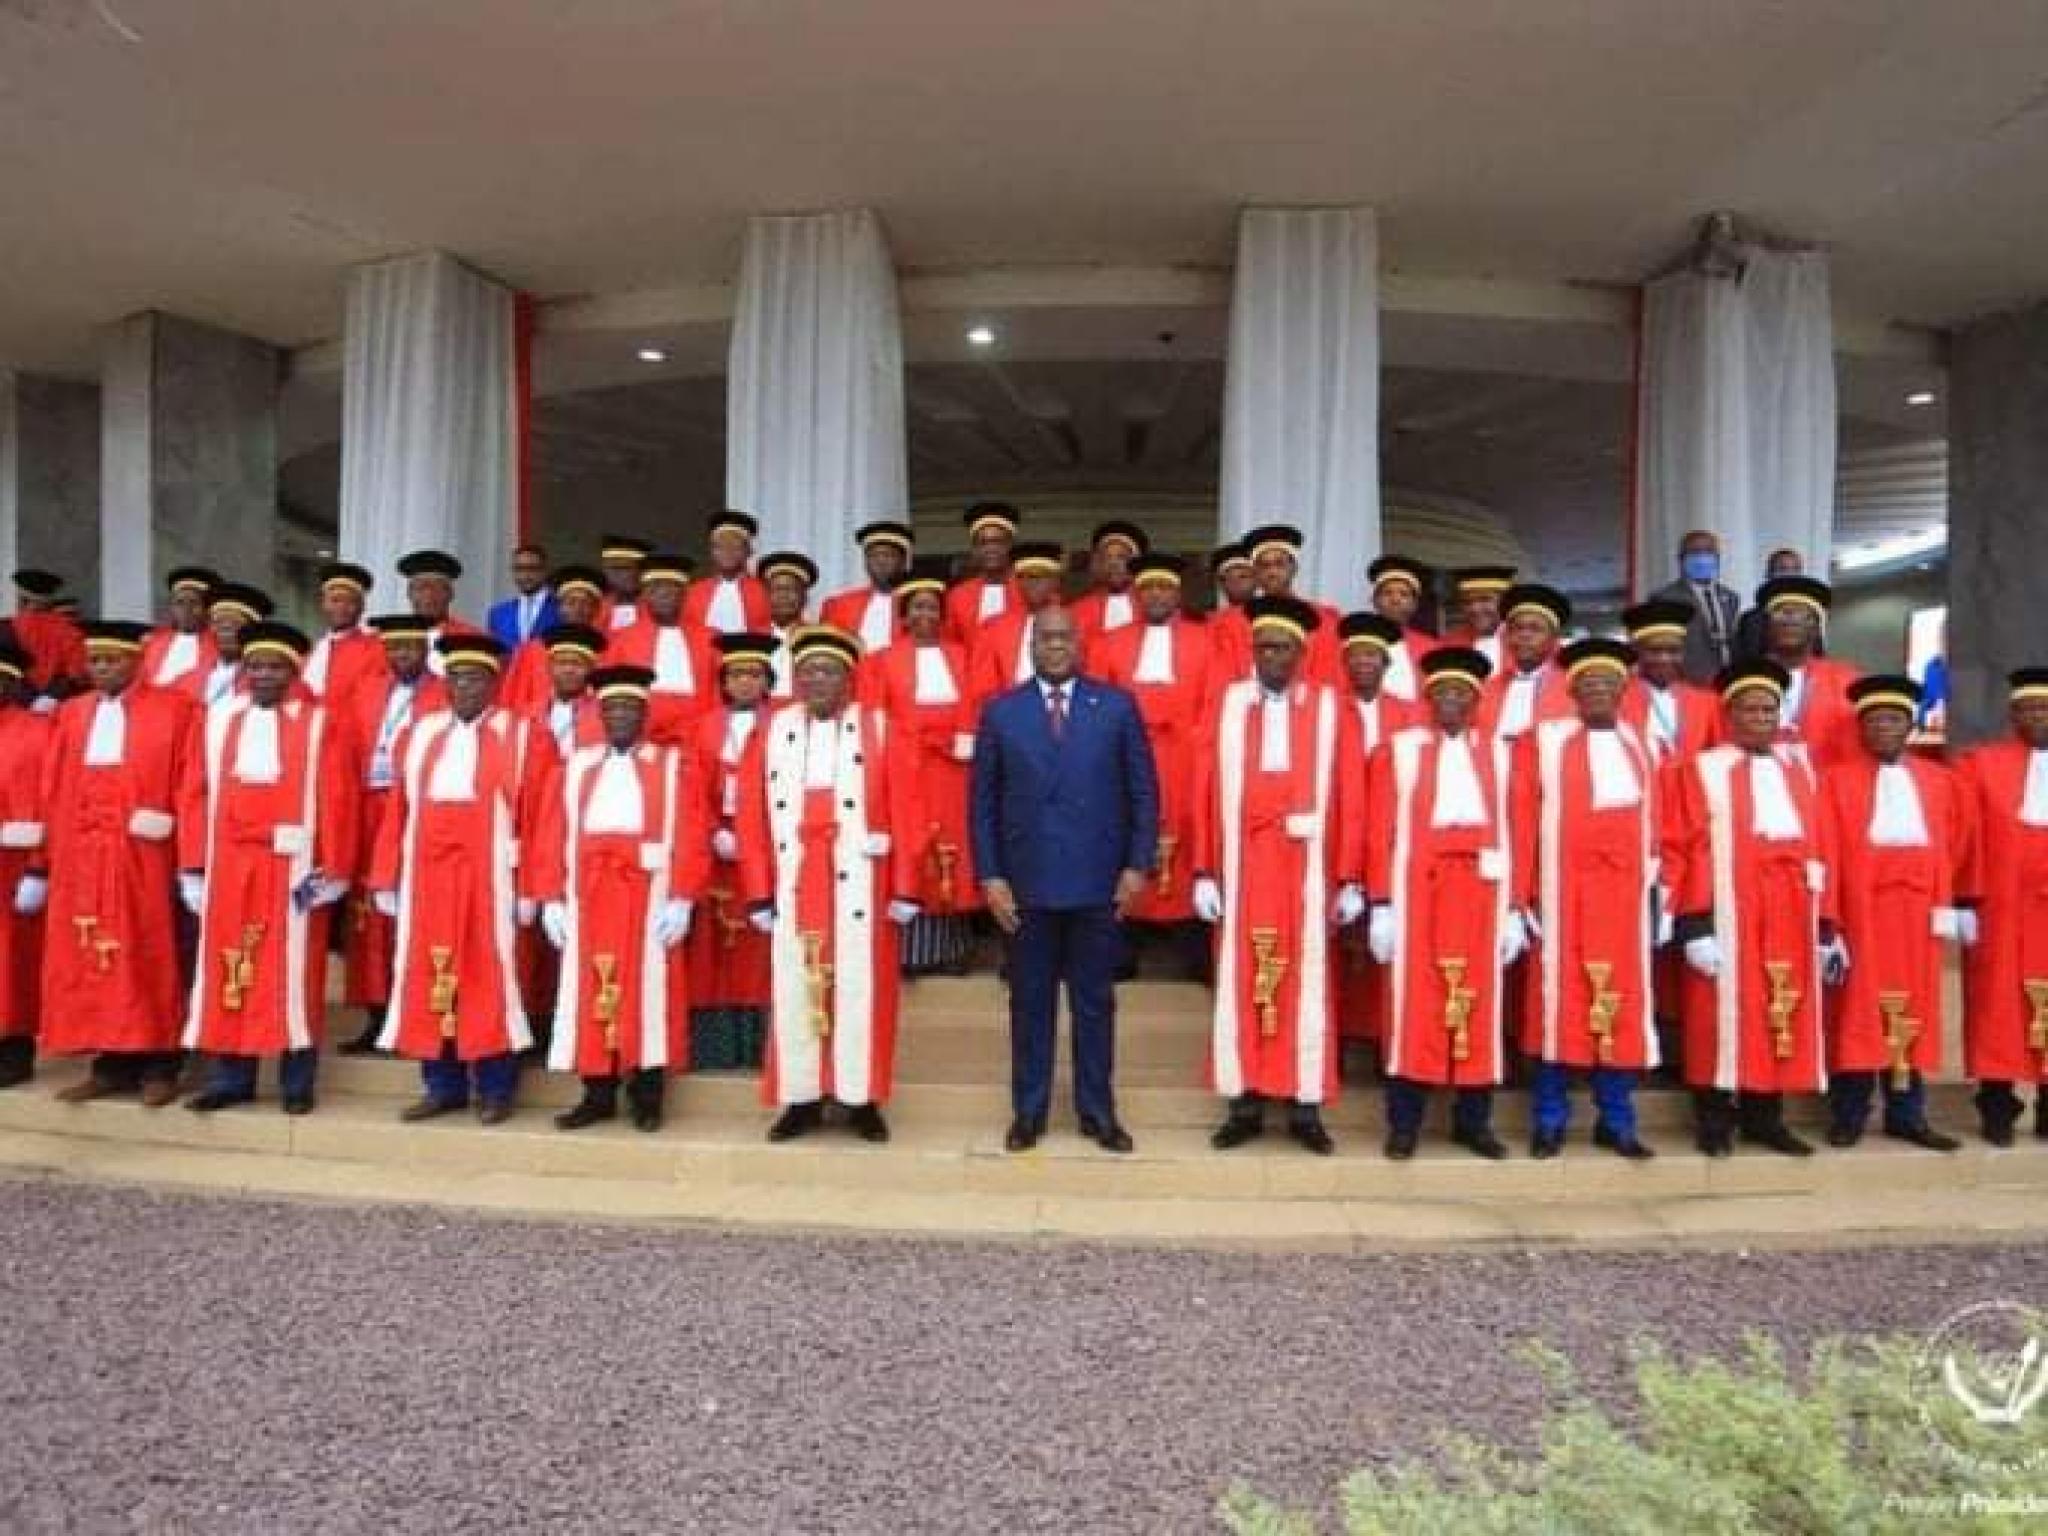 Le président Félix Tshisekedi entouré de plusieurs magistrats